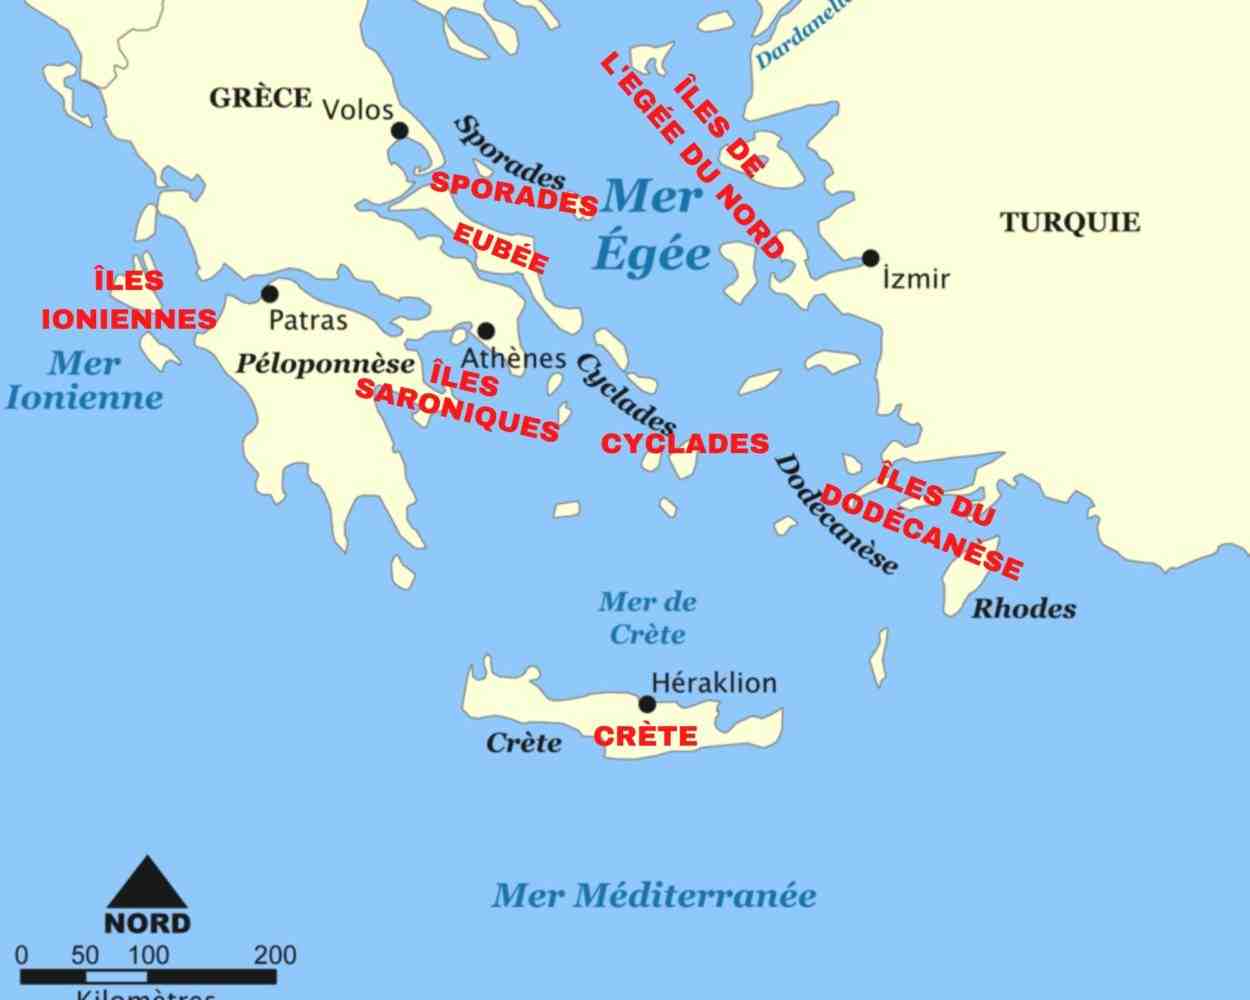 Quelle est la plus belle île grecque?